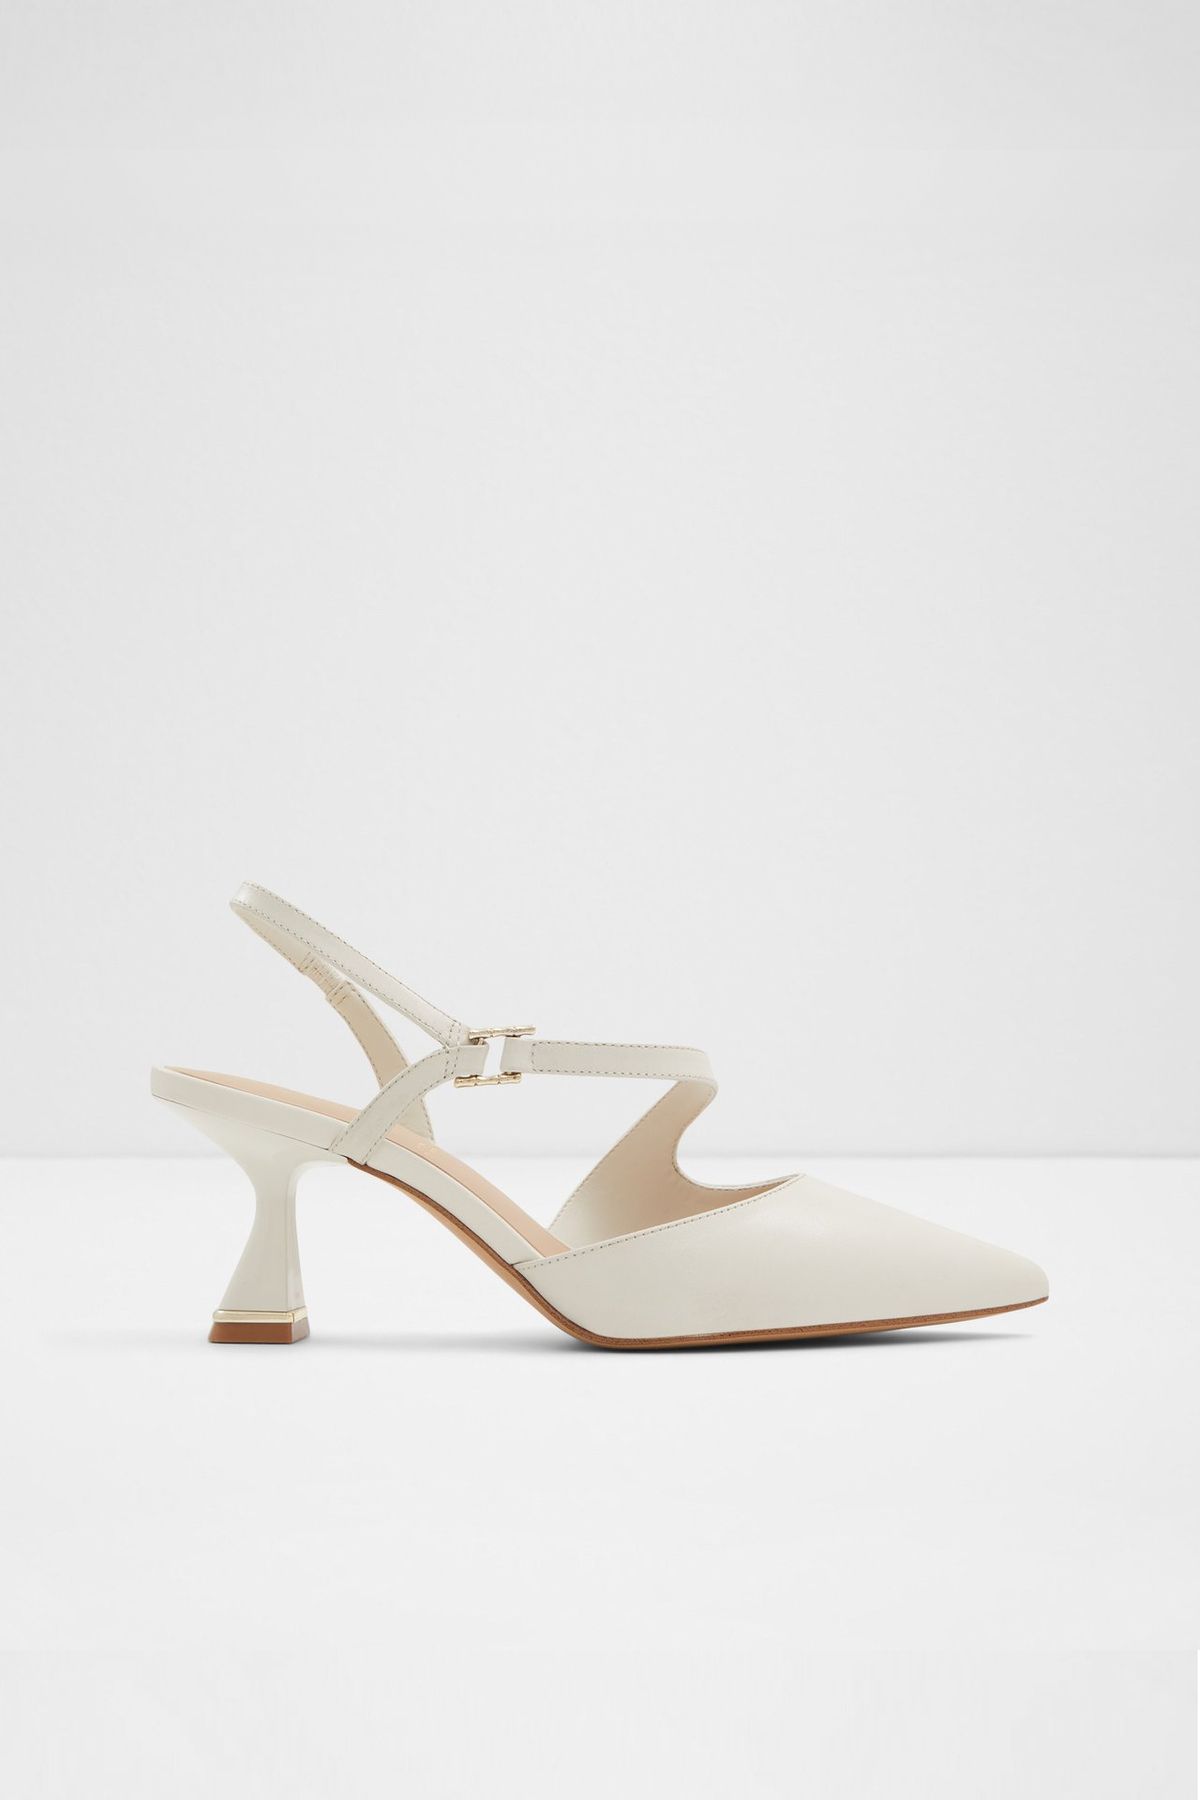 Aldo SEVILLA - Beyaz Kadın Topuklu Ayakkabı